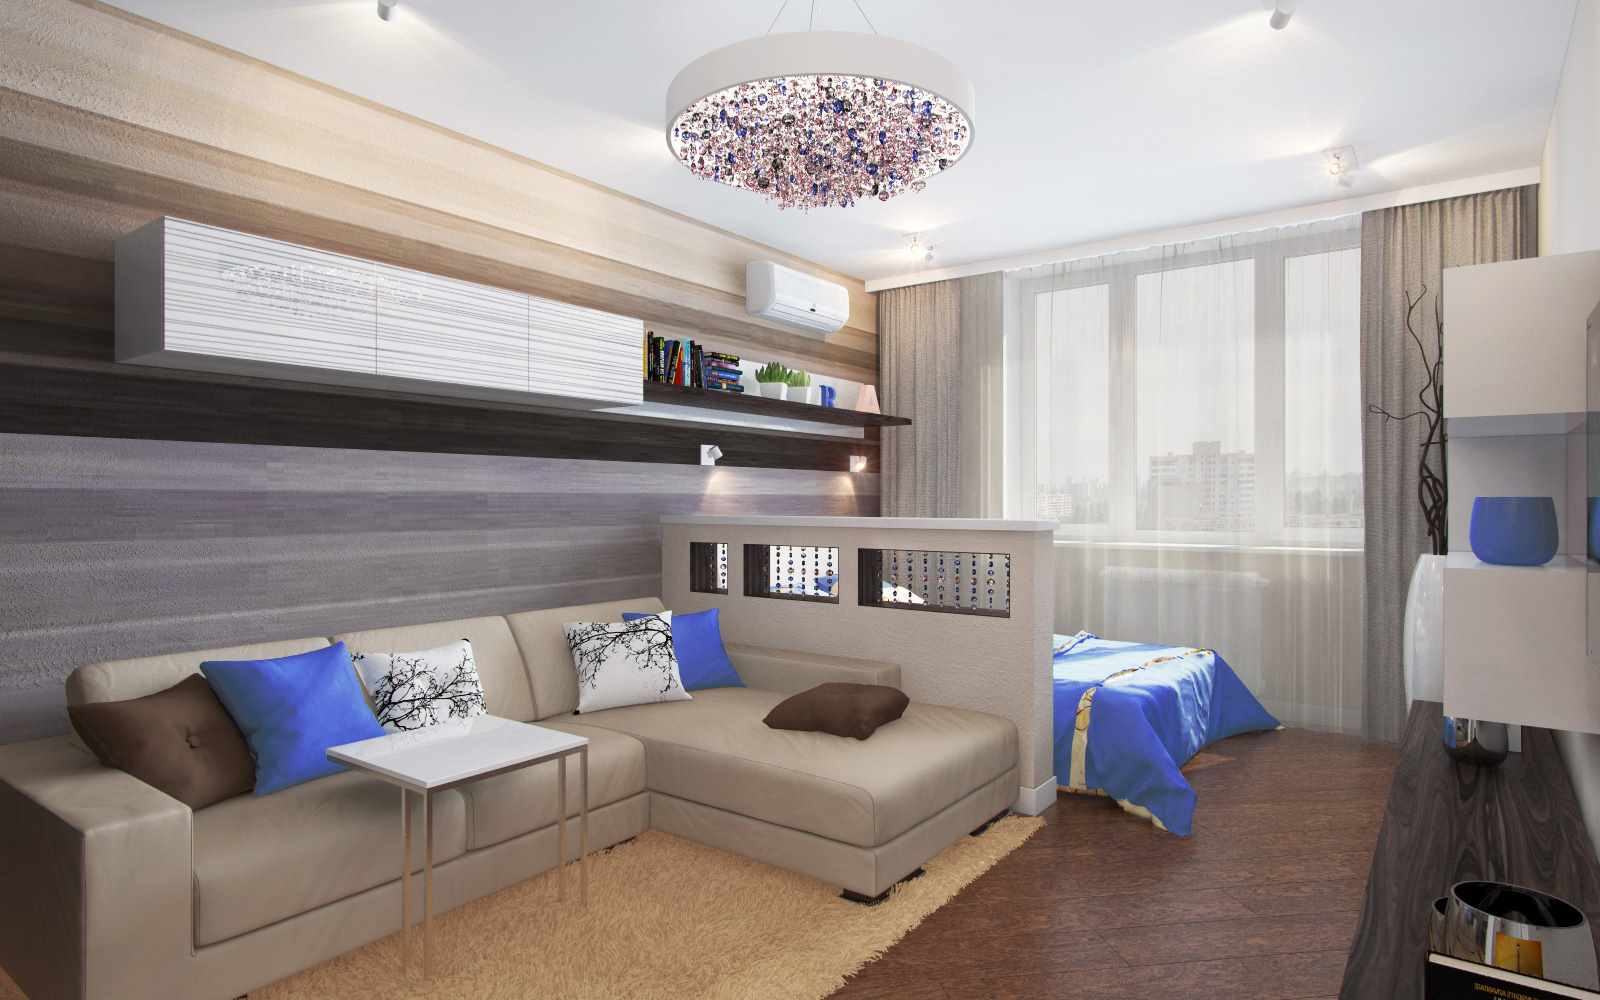 l'idea di un design luminoso di un soggiorno di 19-20 mq